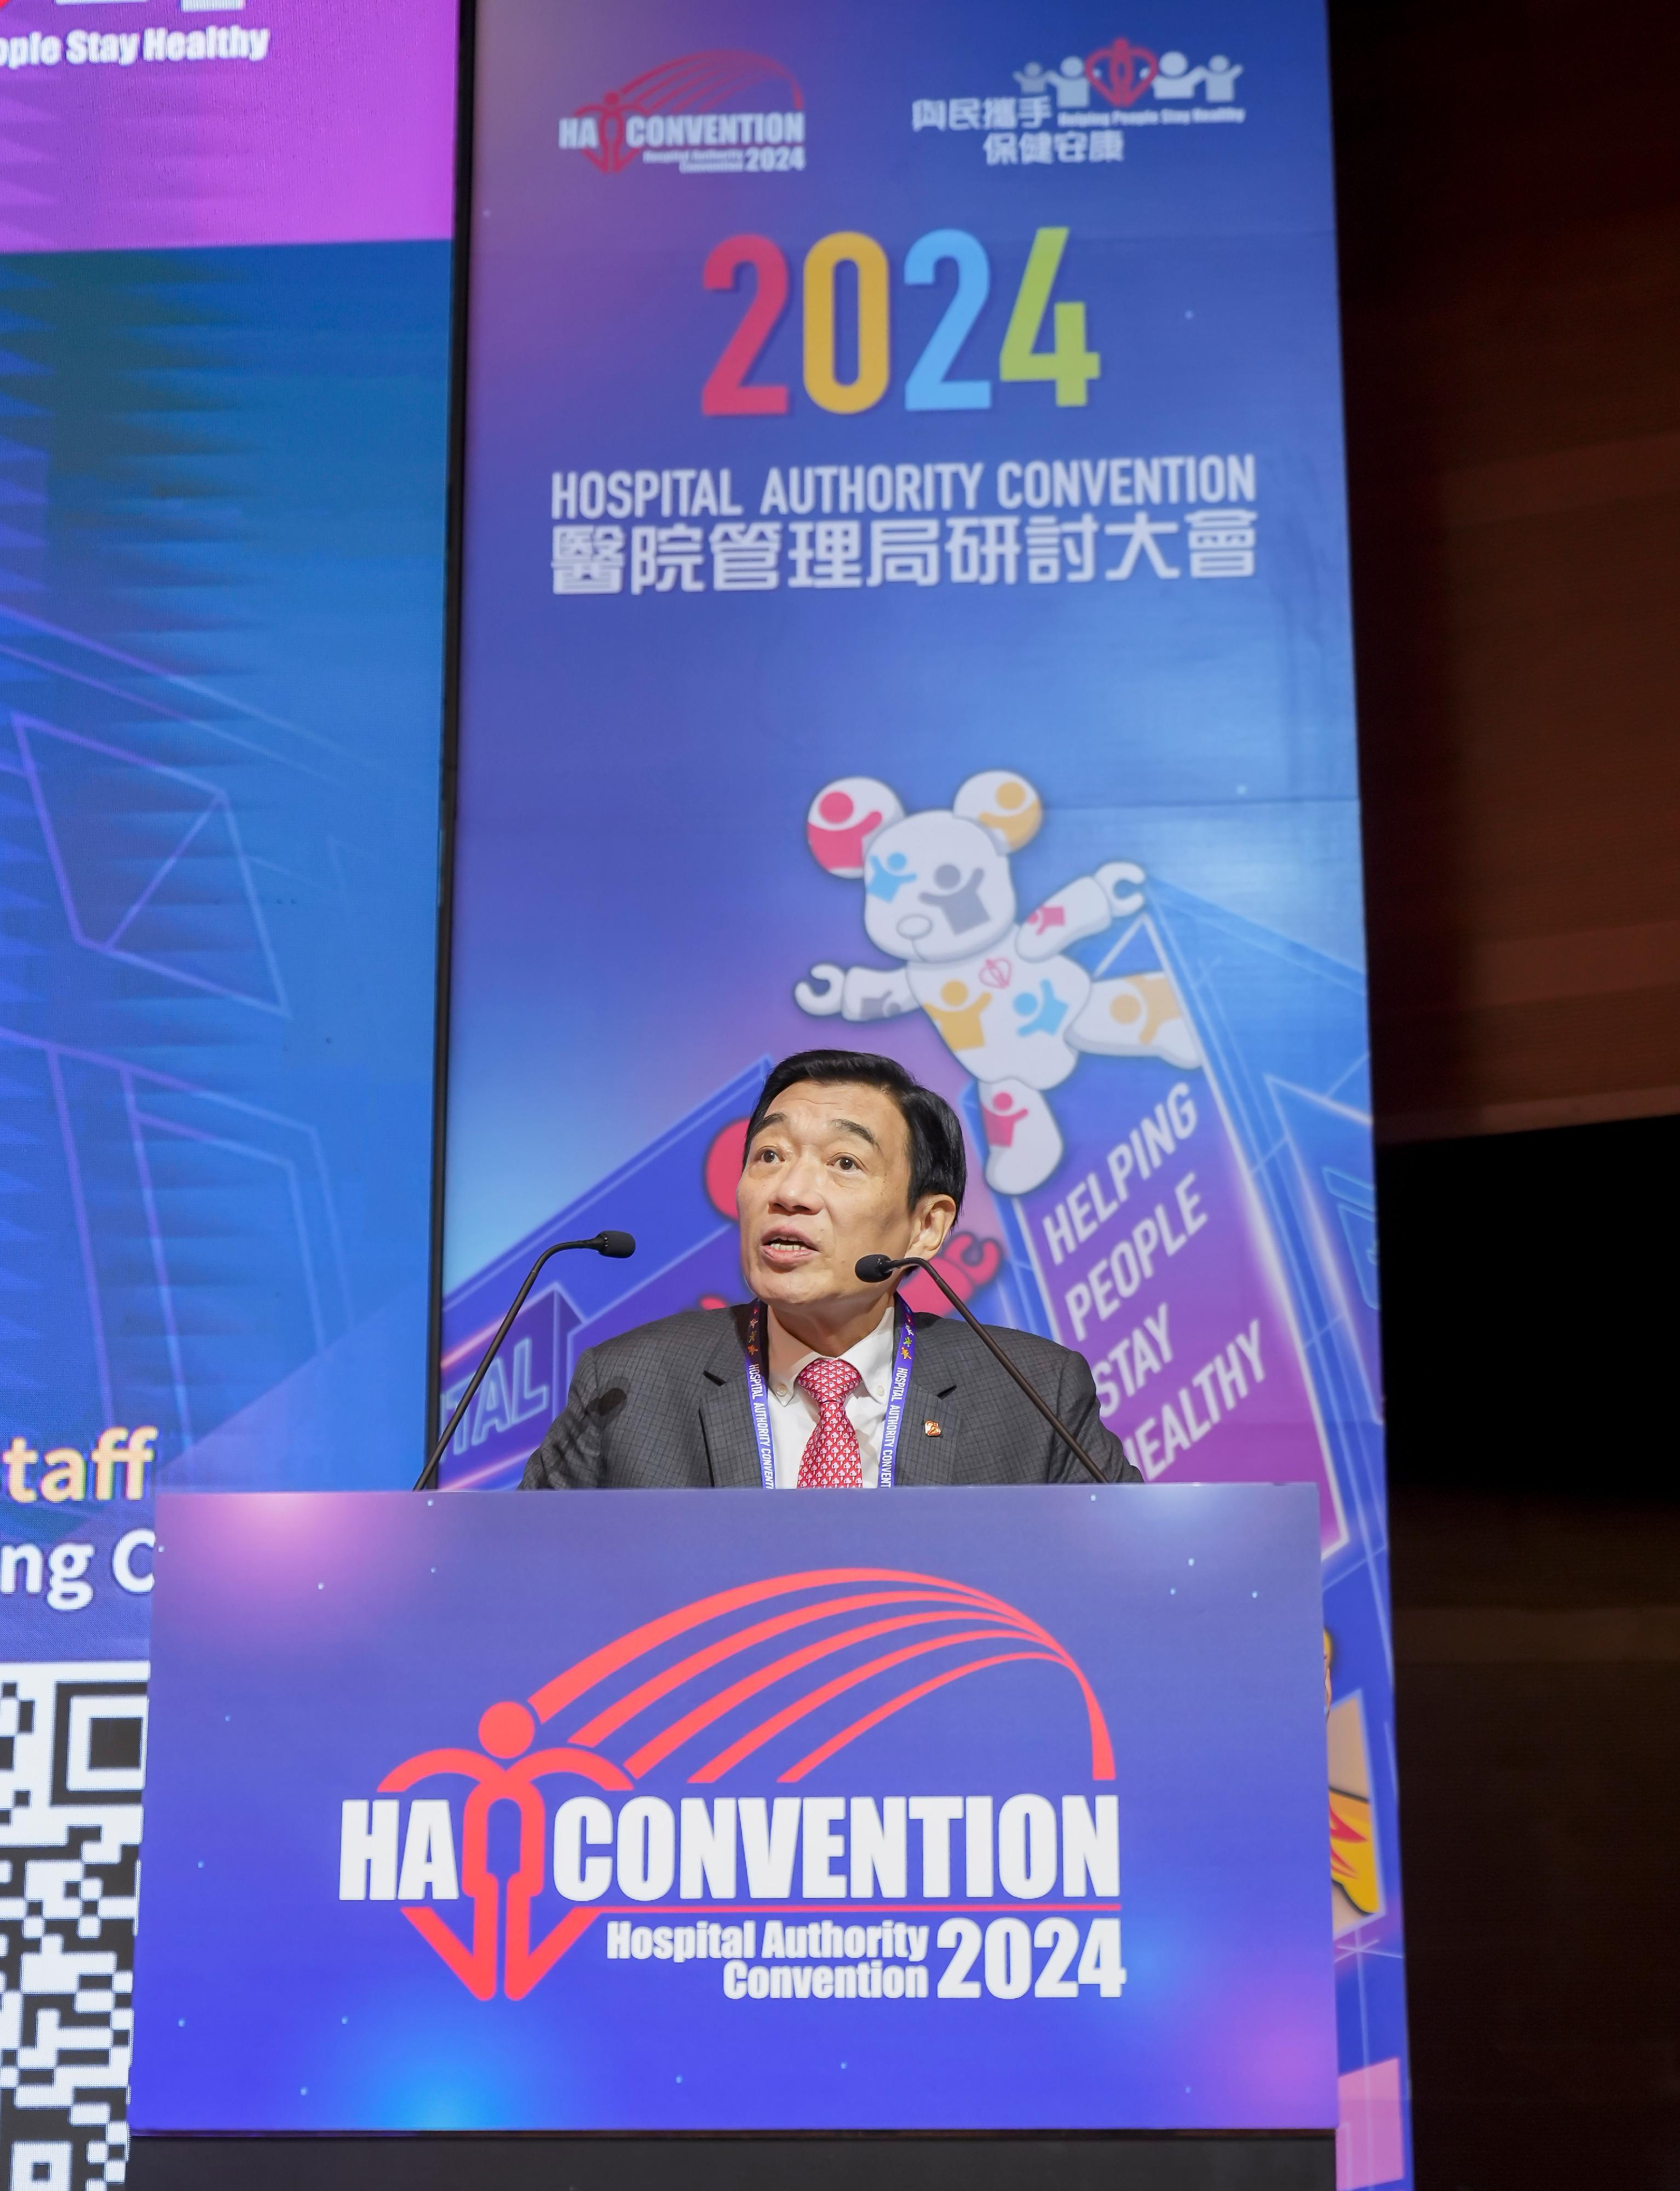 醫管局主席范鴻齡於研討大會開幕典禮致歡迎辭。